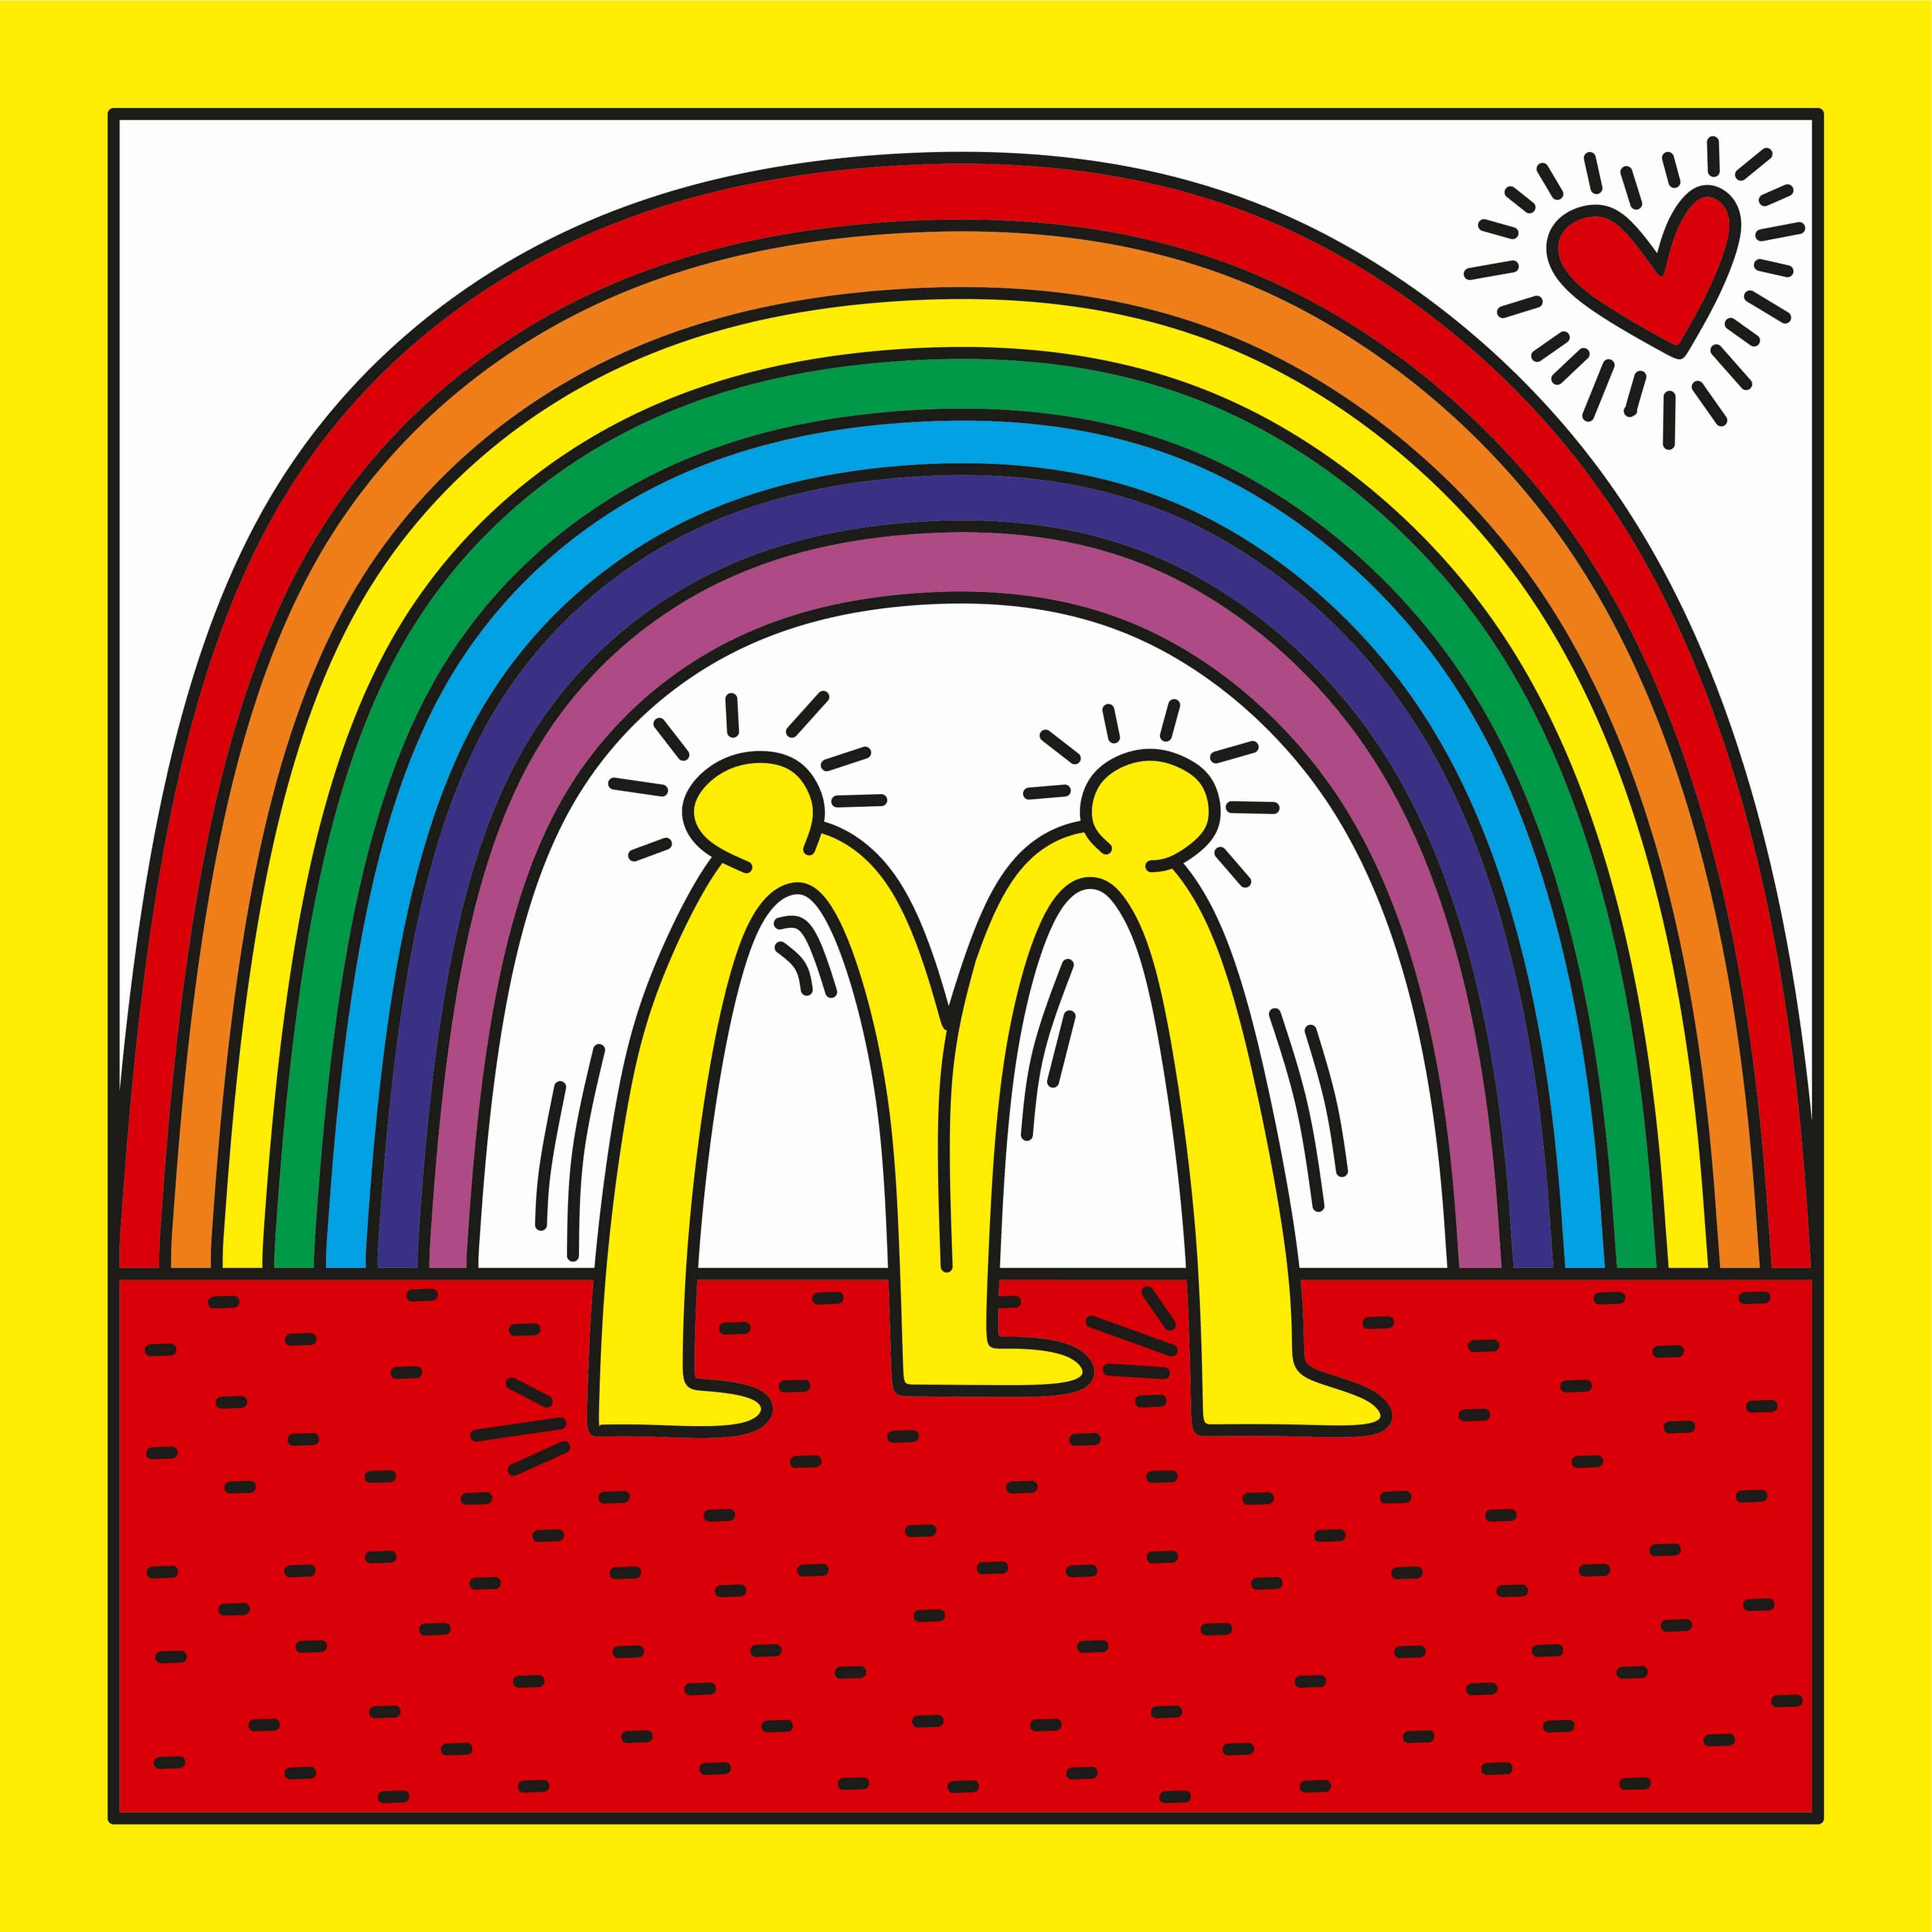 Keith Haring kritisierte mit seinen Arbeiten systemische und gesellschaftliche Probleme. Er lebte als offen schwuler Pop Artist und sensibilisierte in der ersten AIDS-Awareness-Phase für safen Sex. Seinen leuchtend bunten Stil interpretierte Sebastian G. Grupooma im Mc. Donalds Logo neu. 